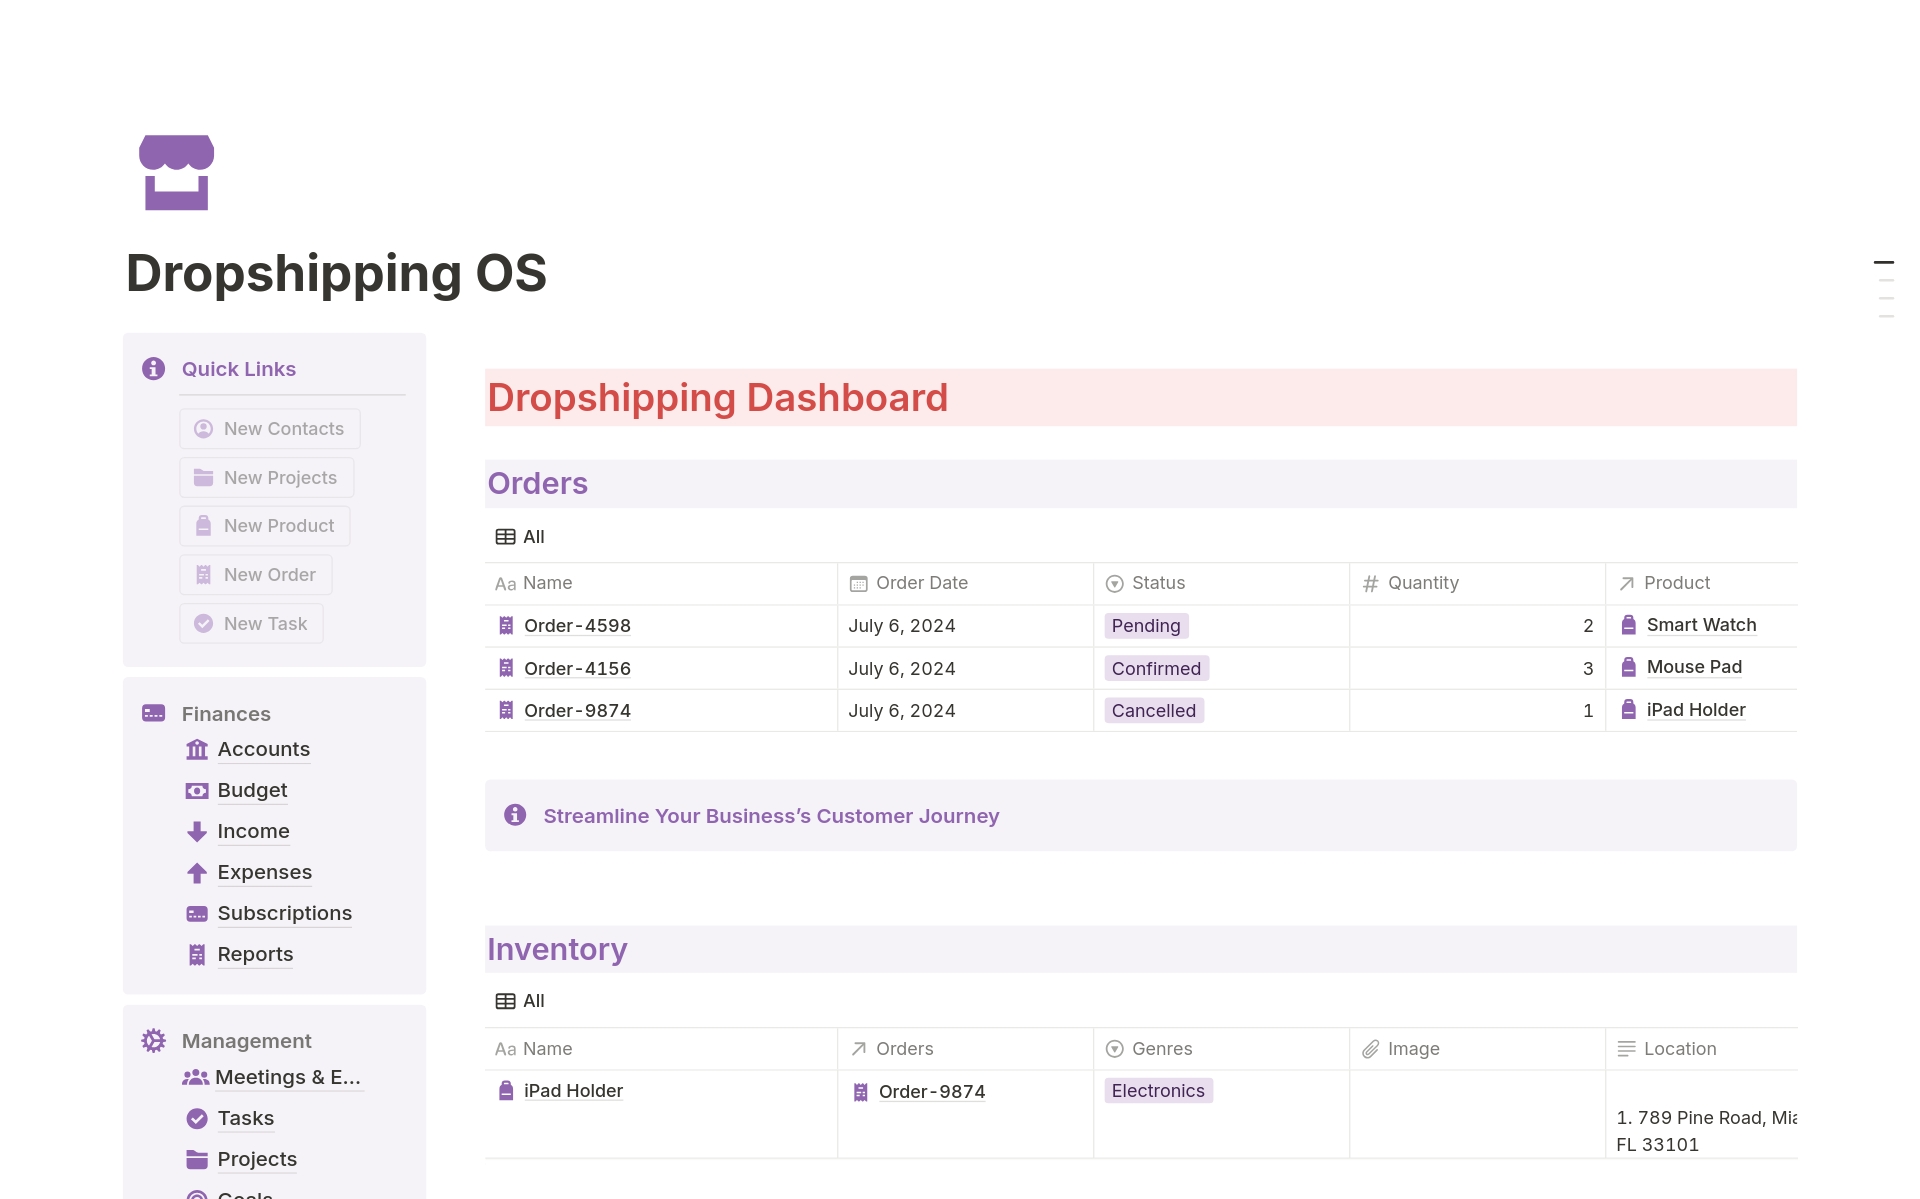 Vista previa de una plantilla para Dropshipping OS 